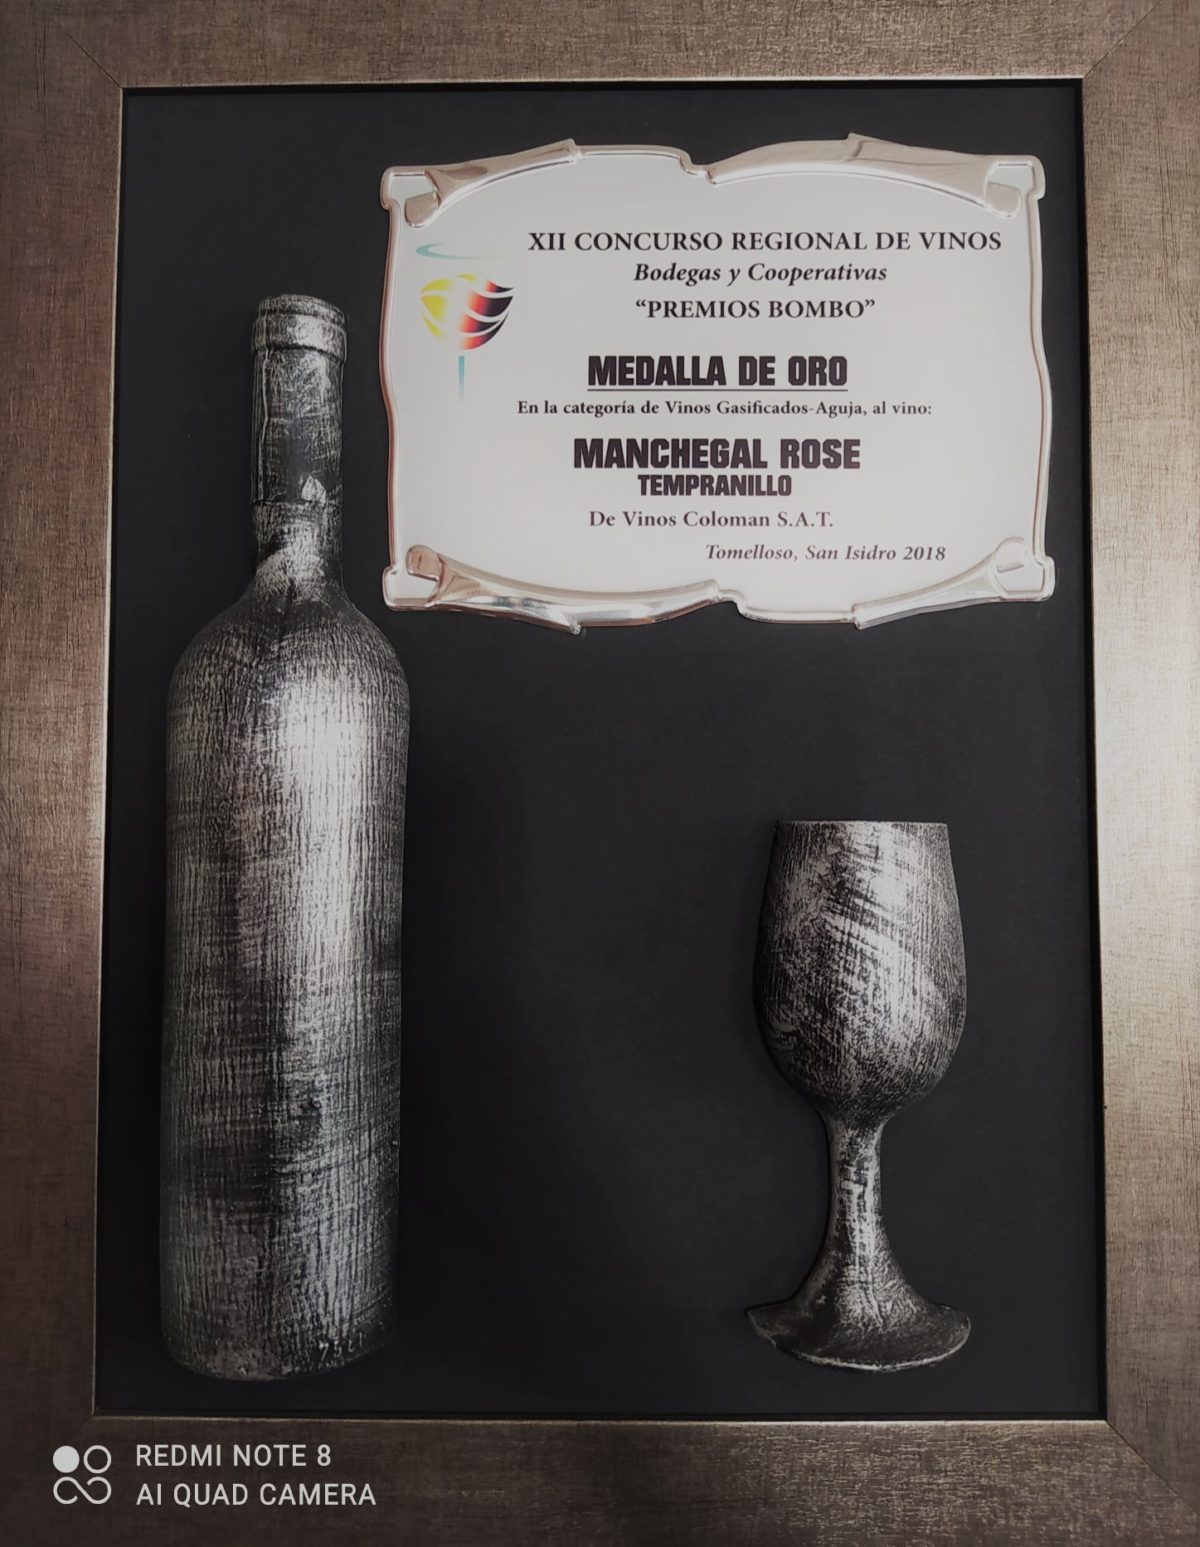 Medalla Oro en el Concurso Regional de Vinos “Premios Bombo” 2018 (Manchegal Rosado de Aguja)